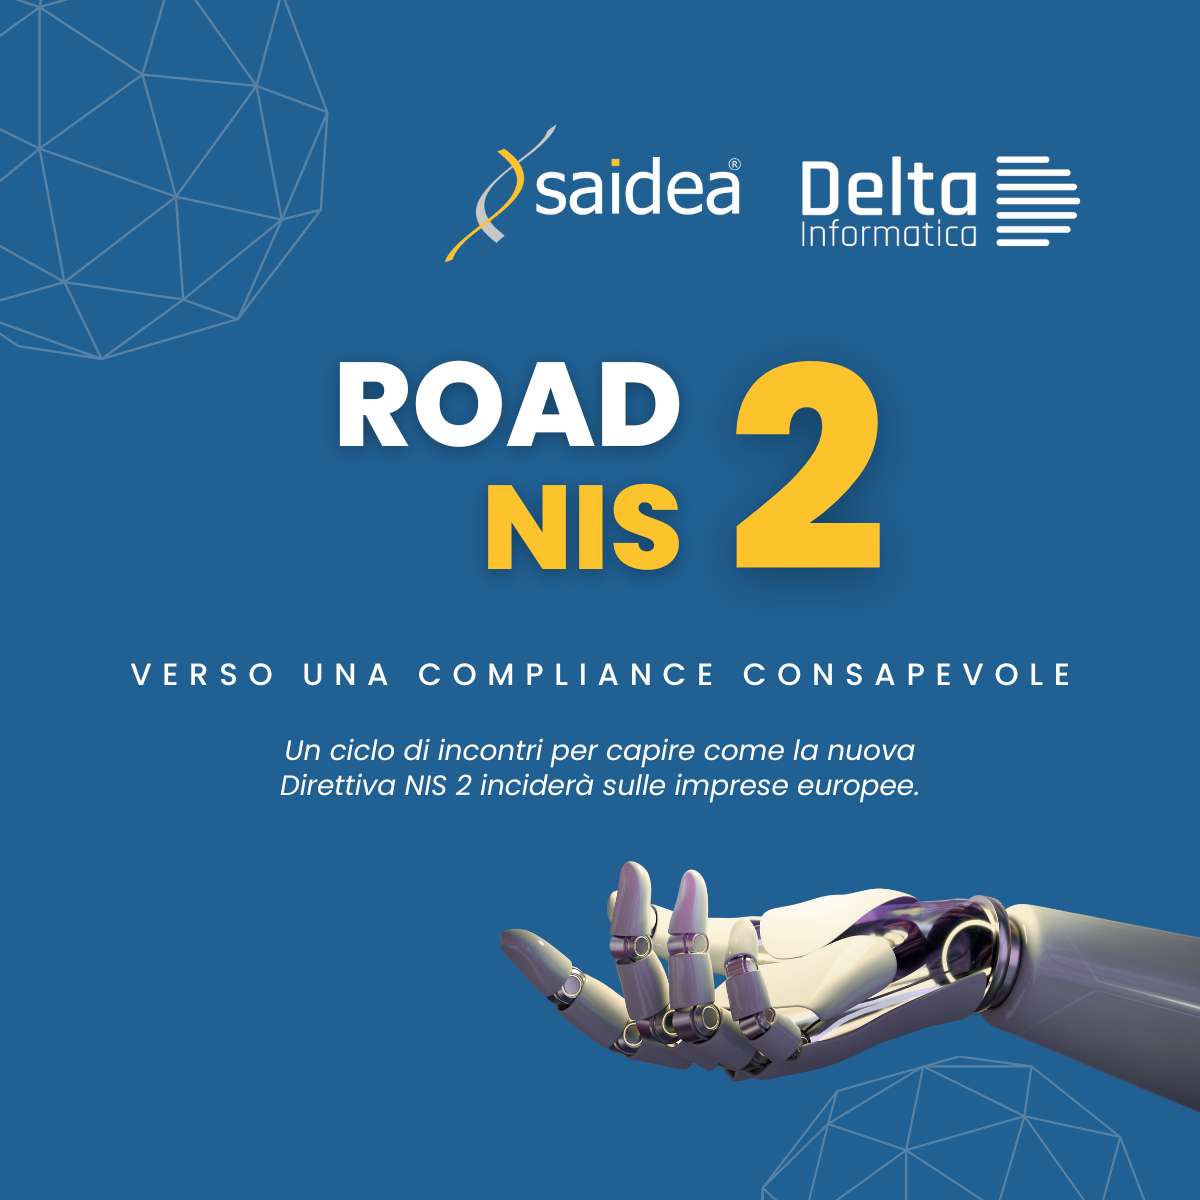 Grafica che parla del Ciclo di eventi "Road 2 NIS 2", in viaggio verso la NIS 2 (la direttiva UE sulla cybersecurity)